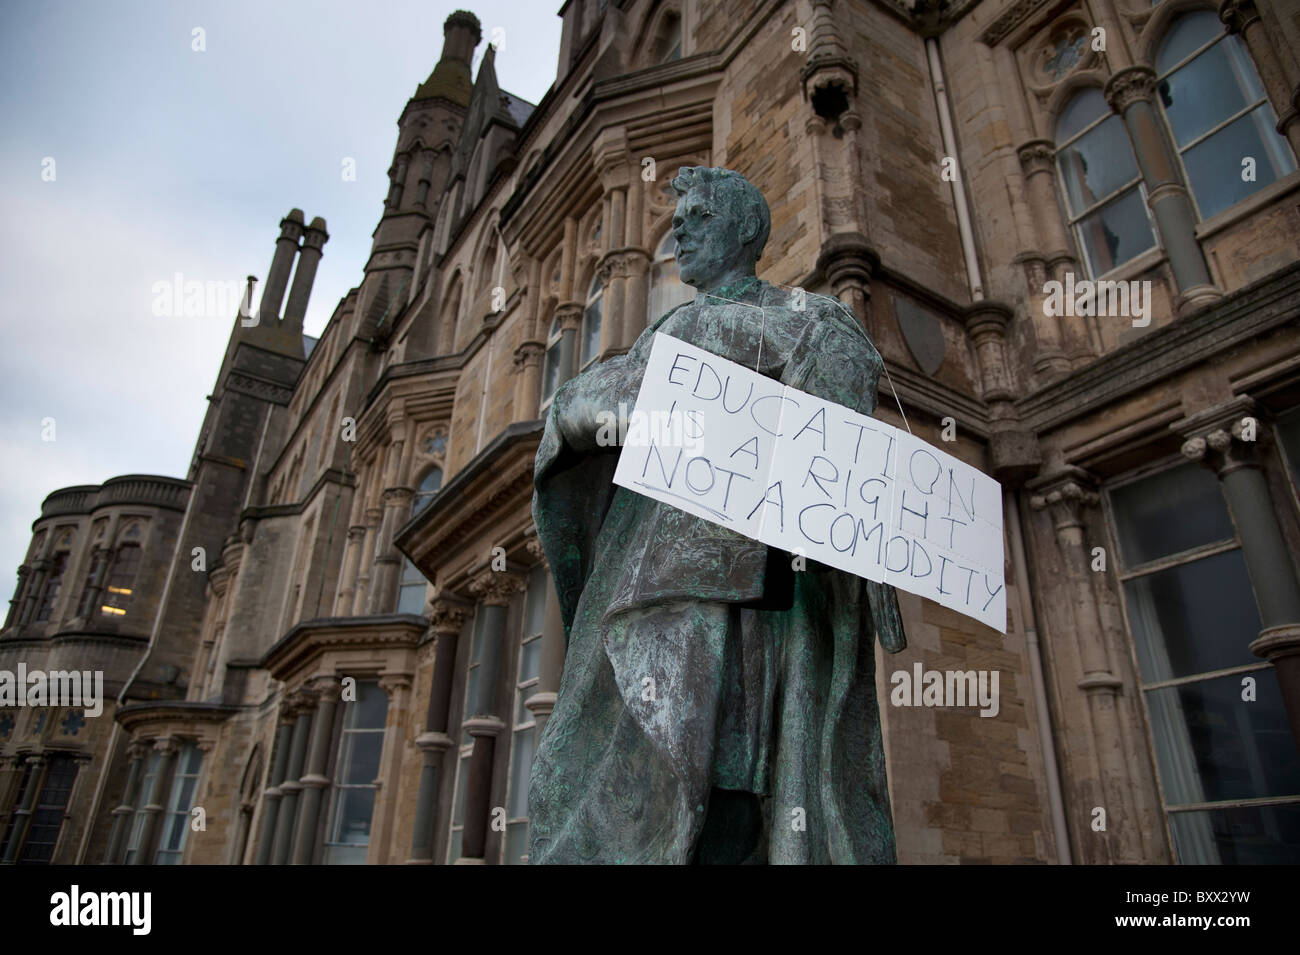 Les étudiants de l'université d'Aberystwyth pour protester contre les coupures prévues dans le financement de l'enseignement supérieur, UK Banque D'Images